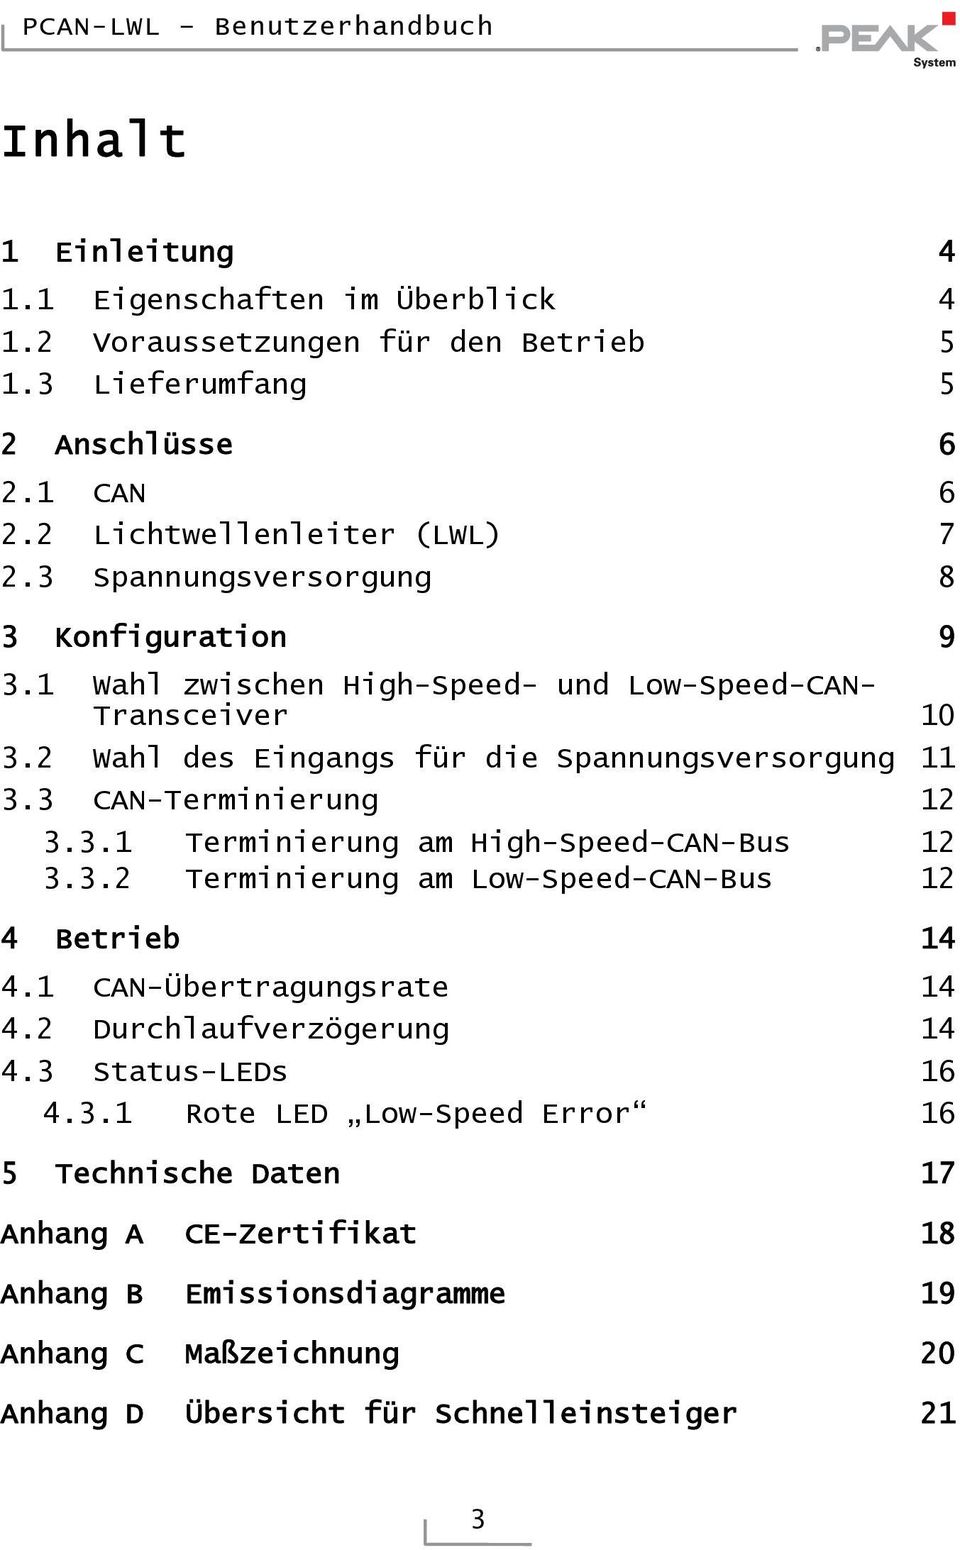 3 CAN-Terminierung 12 3.3.1 Terminierung am High-Speed-CAN-Bus 12 3.3.2 Terminierung am Low-Speed-CAN-Bus 12 4 Betrieb 14 4.1 CAN-Übertragungsrate 14 4.